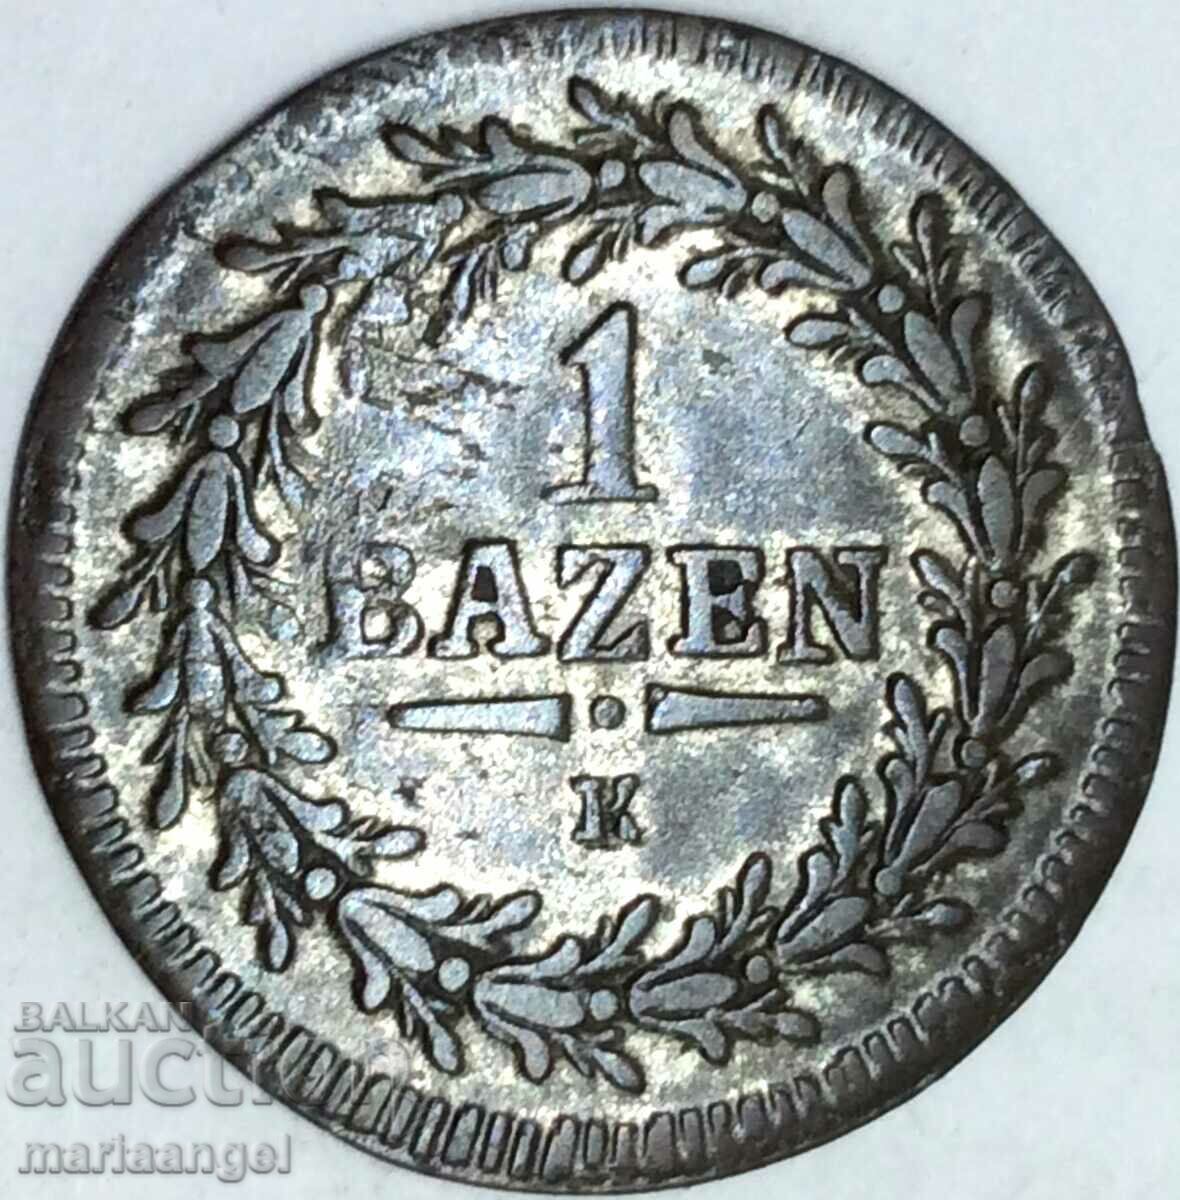 Ελβετία 1 batzen 1815 καντόνι St. Gallen ασήμι - αρκετά σπάνιο